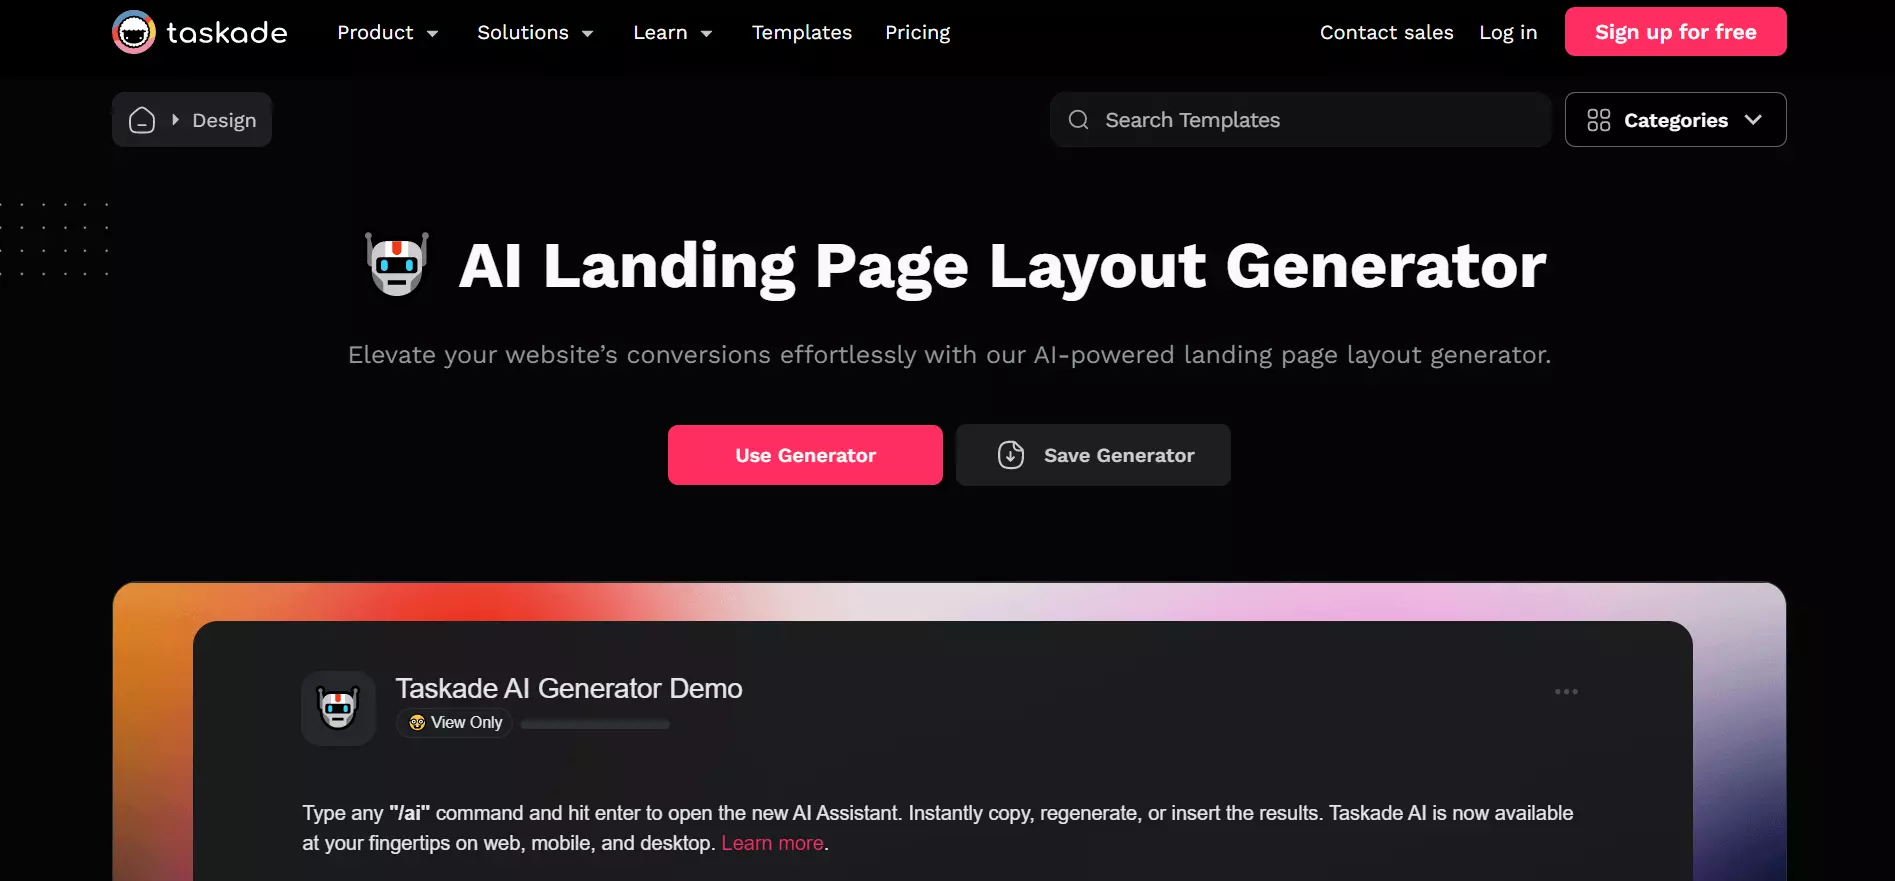 Taskade AI landing page generator